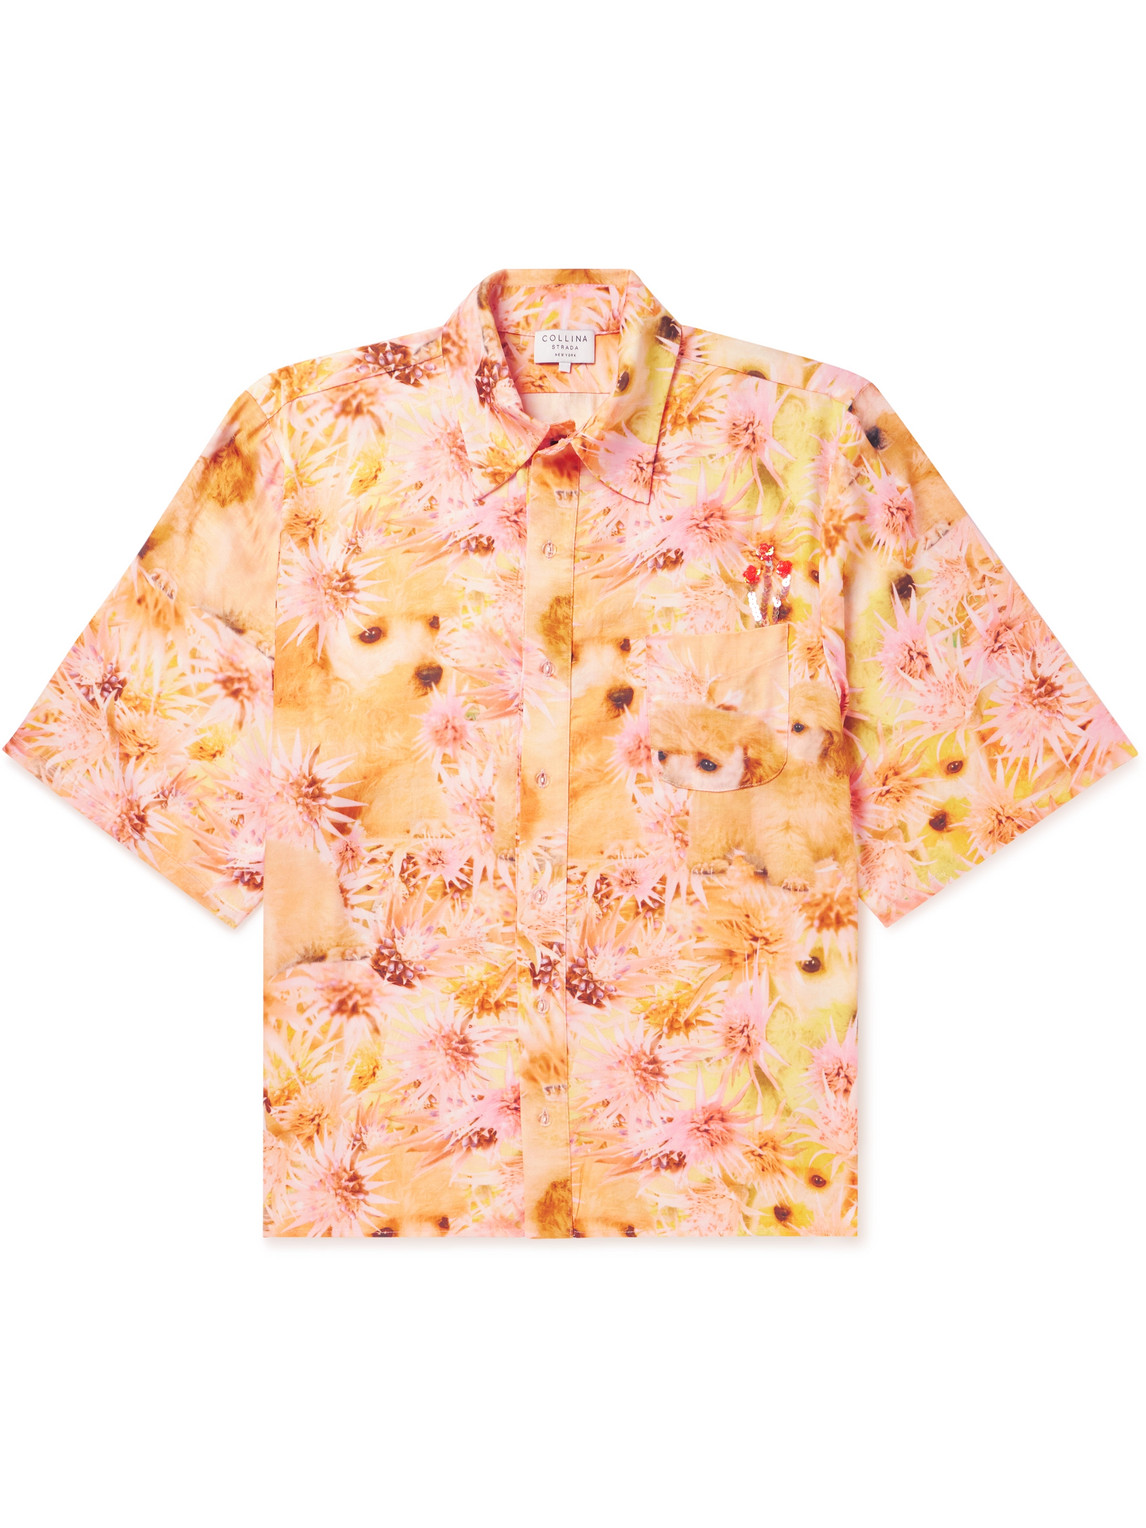 Sequin-Embellished Printed Rose Sylk Shirt